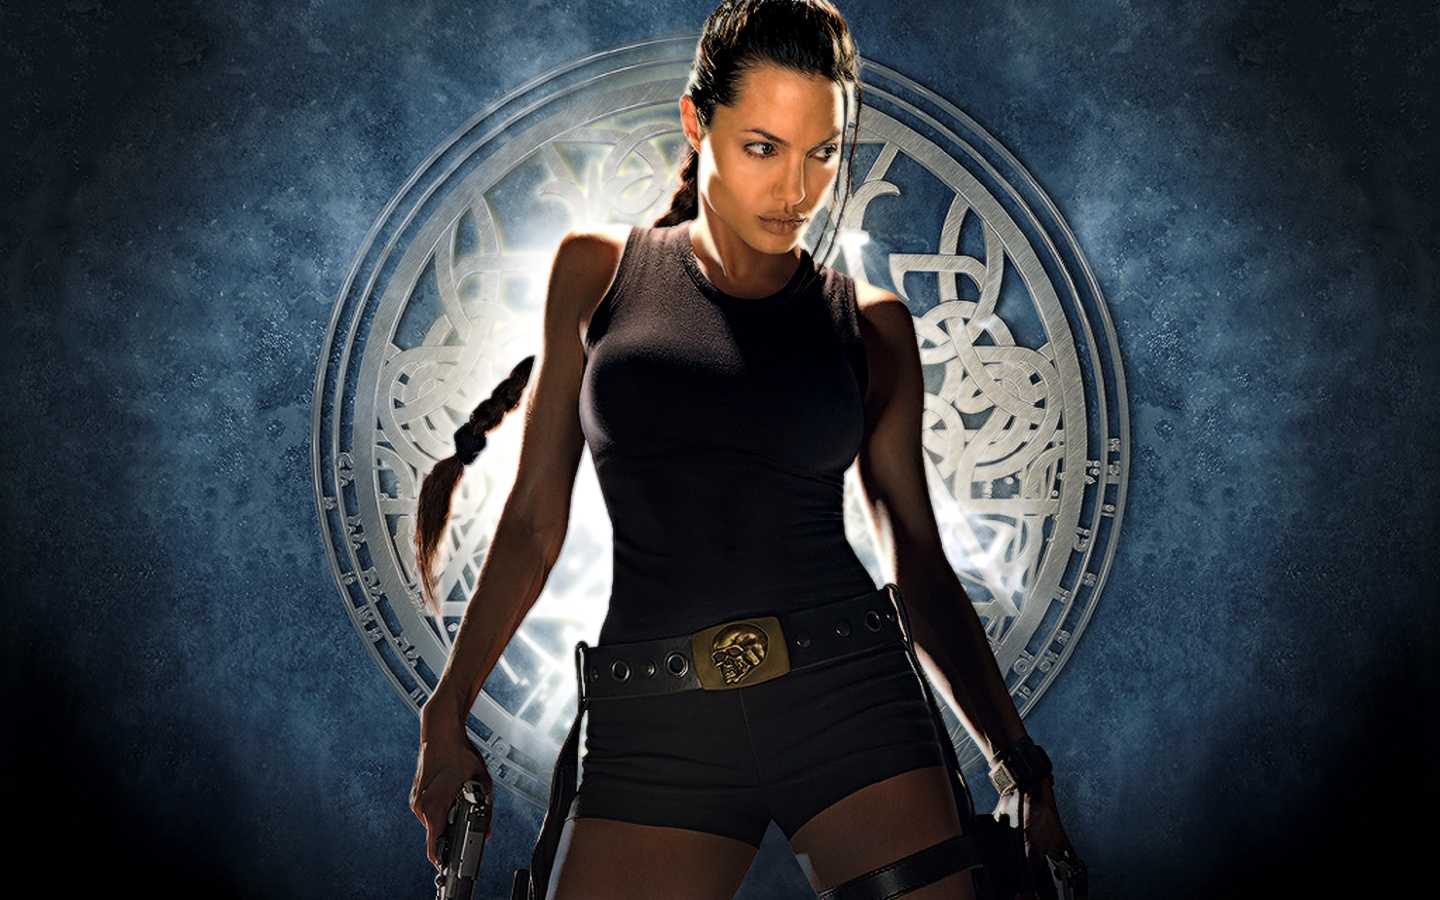 Crítica  Tomb Raider: A Origem - Finalmente a Lara Croft que